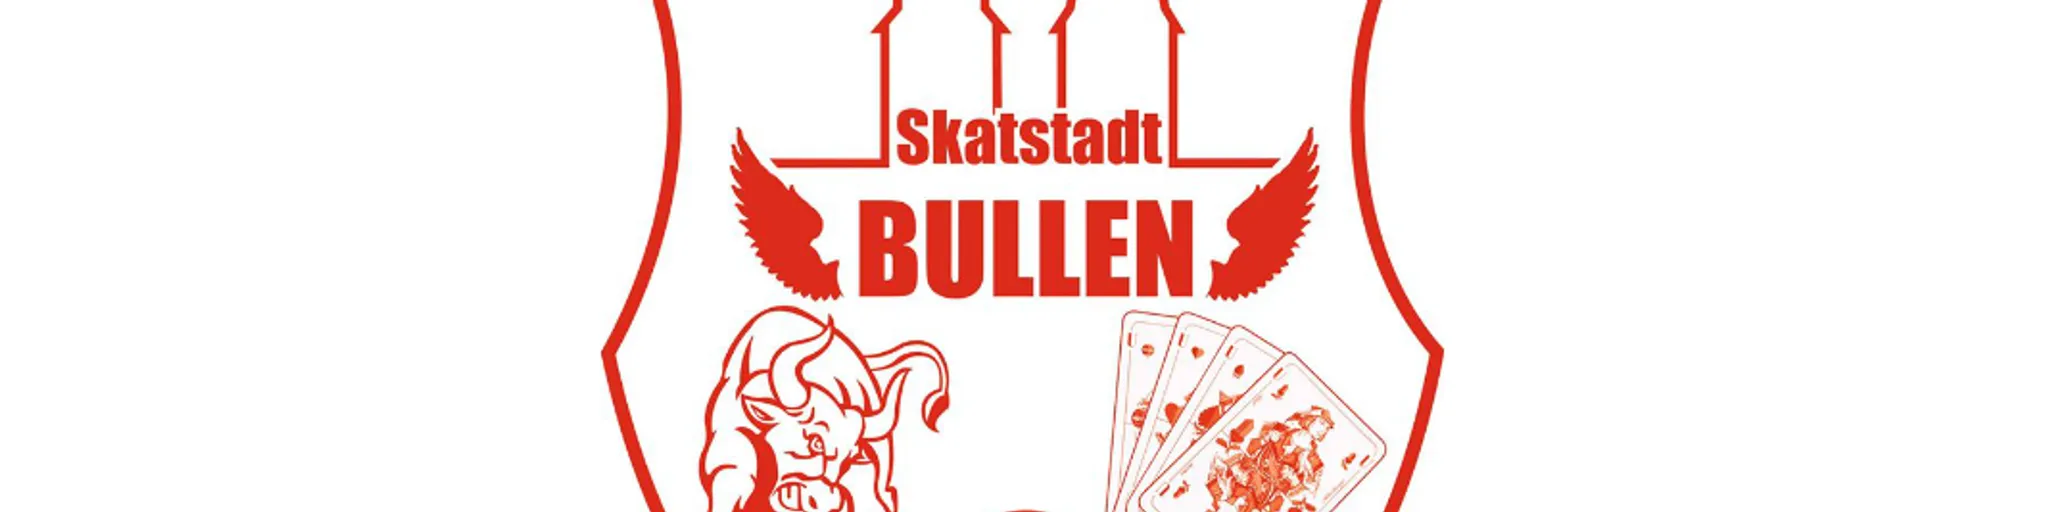 Skatstadt Bullen, OFC seit 03. November 2016